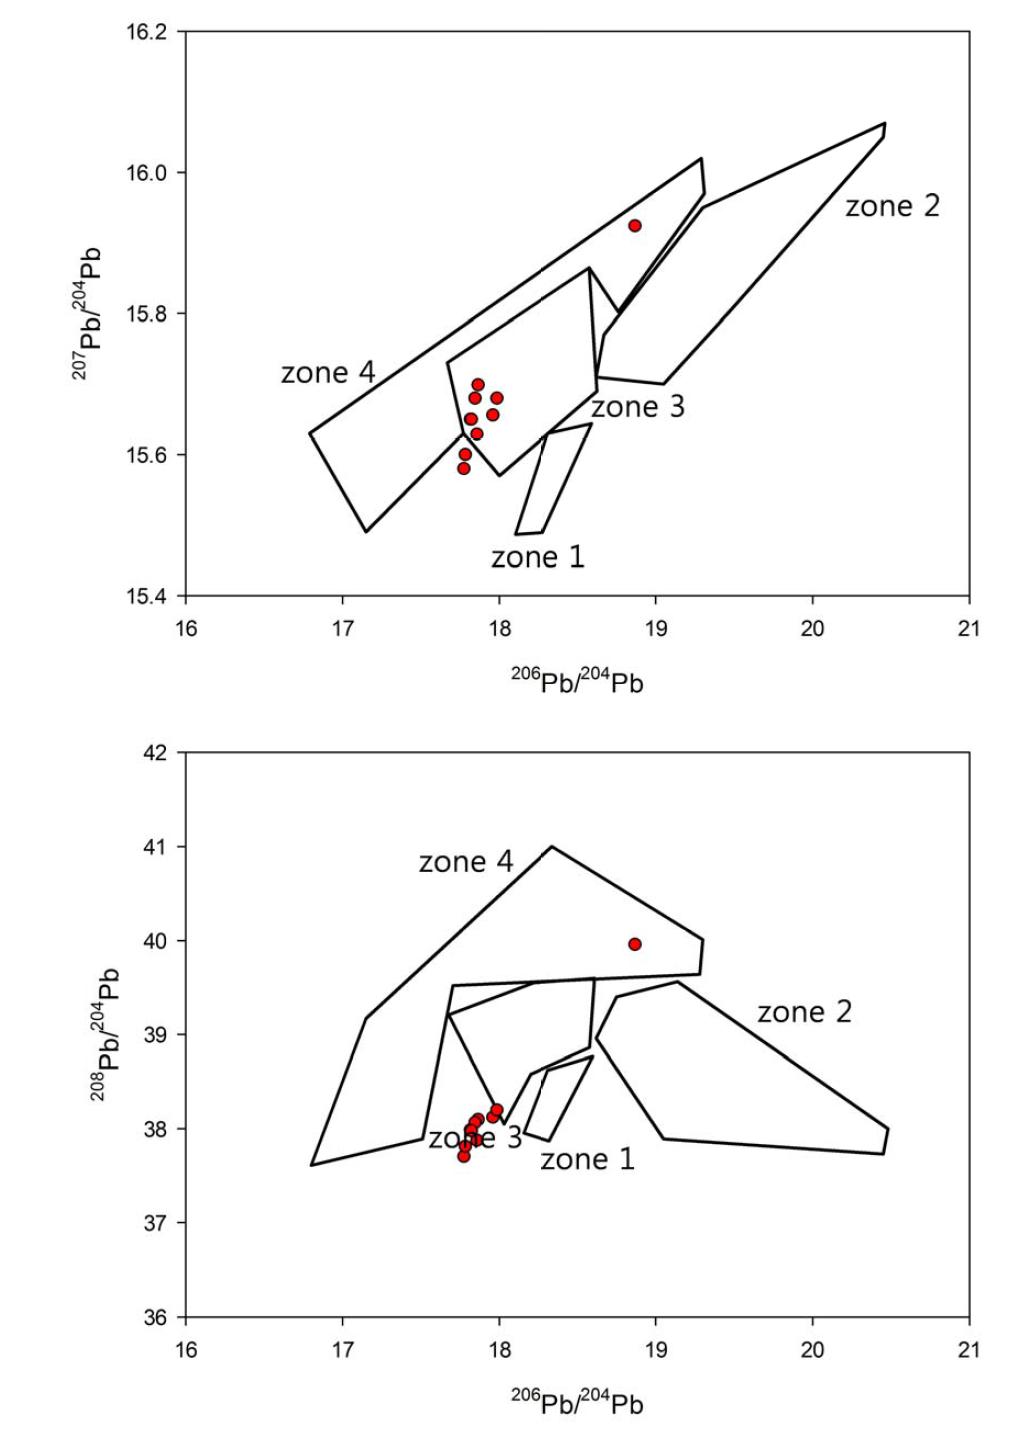 한반도 납동위원소 영역별 도표(zone 1~4)와 포다쉬납유리와의 관계를 도시한 206Pb/204Pb vs 207Pb/204Pb, 206Pb/204Pb vs 208Pb/204Pb ratio 그림.(●: 포타쉬납유리)